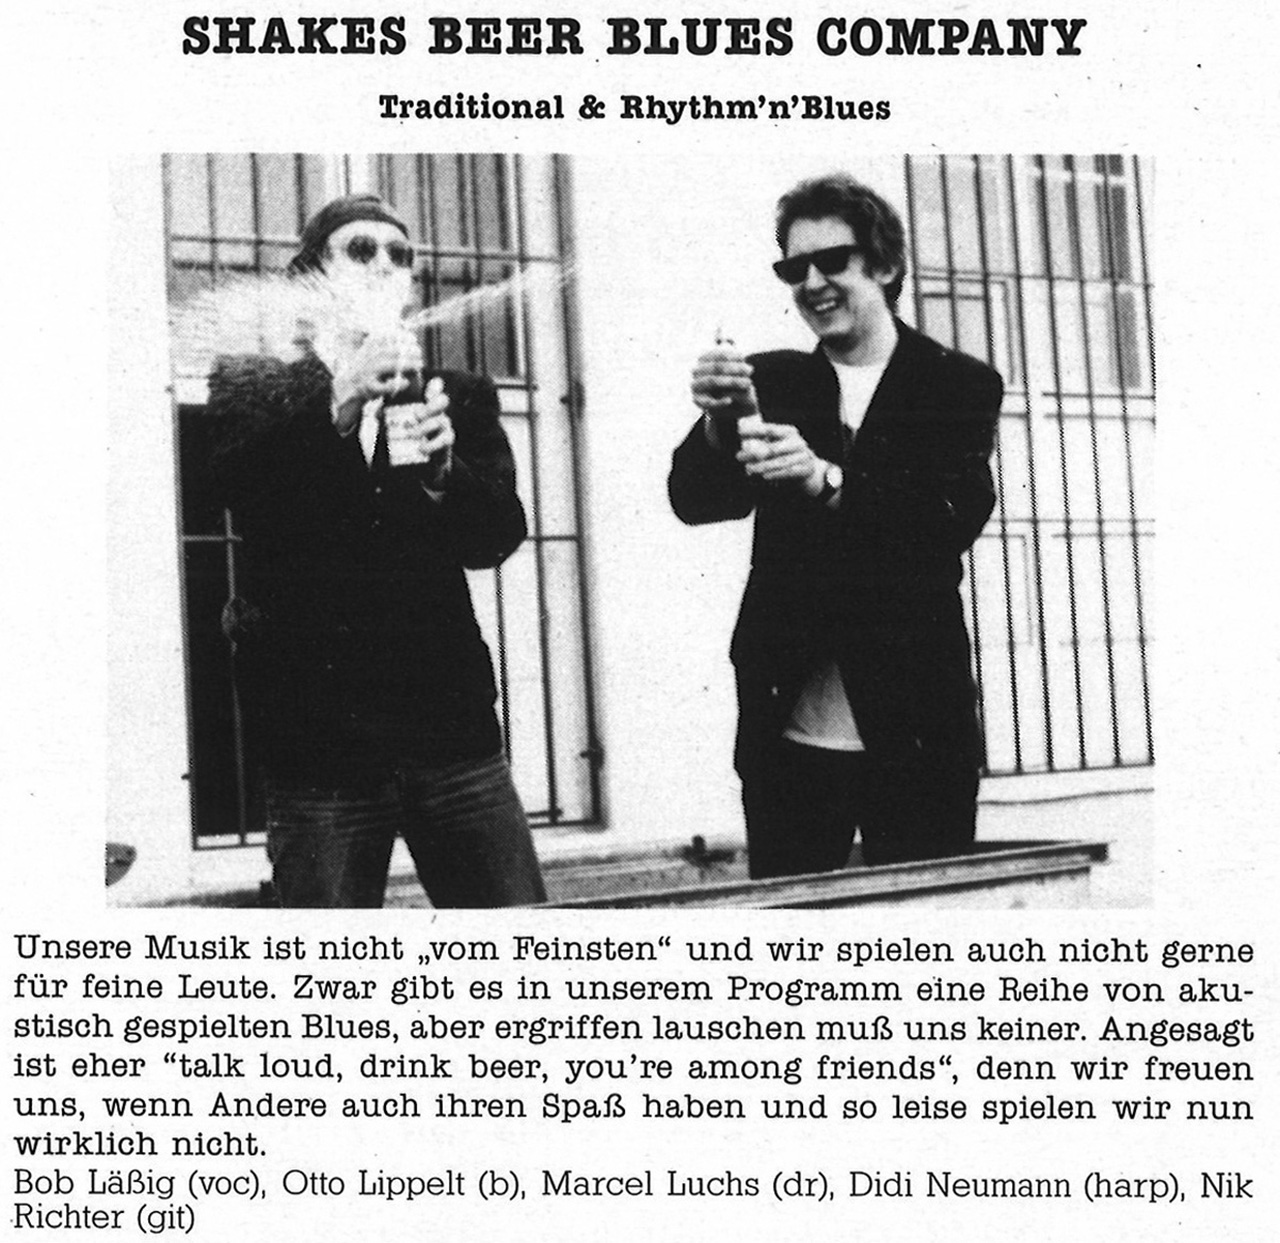 Feierwerk_Blog_Munich_Blues_LP_Sunrise_1988_ Band 3_Shakes_Beer_BC_(c)Feierwerk